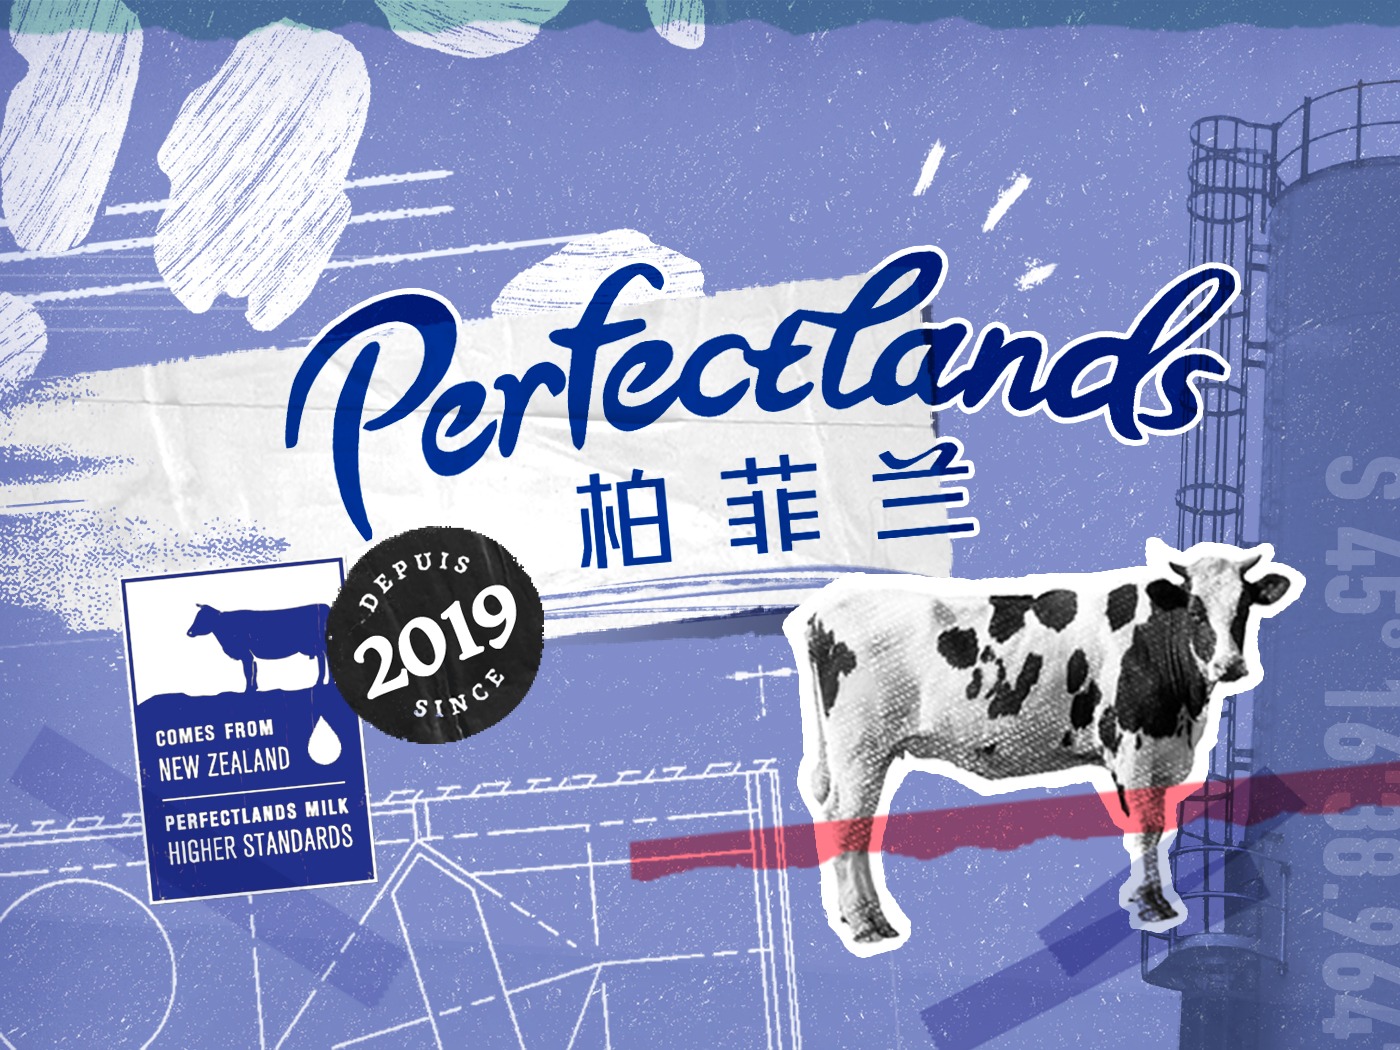 Perfectlands Milk - Higher Standards